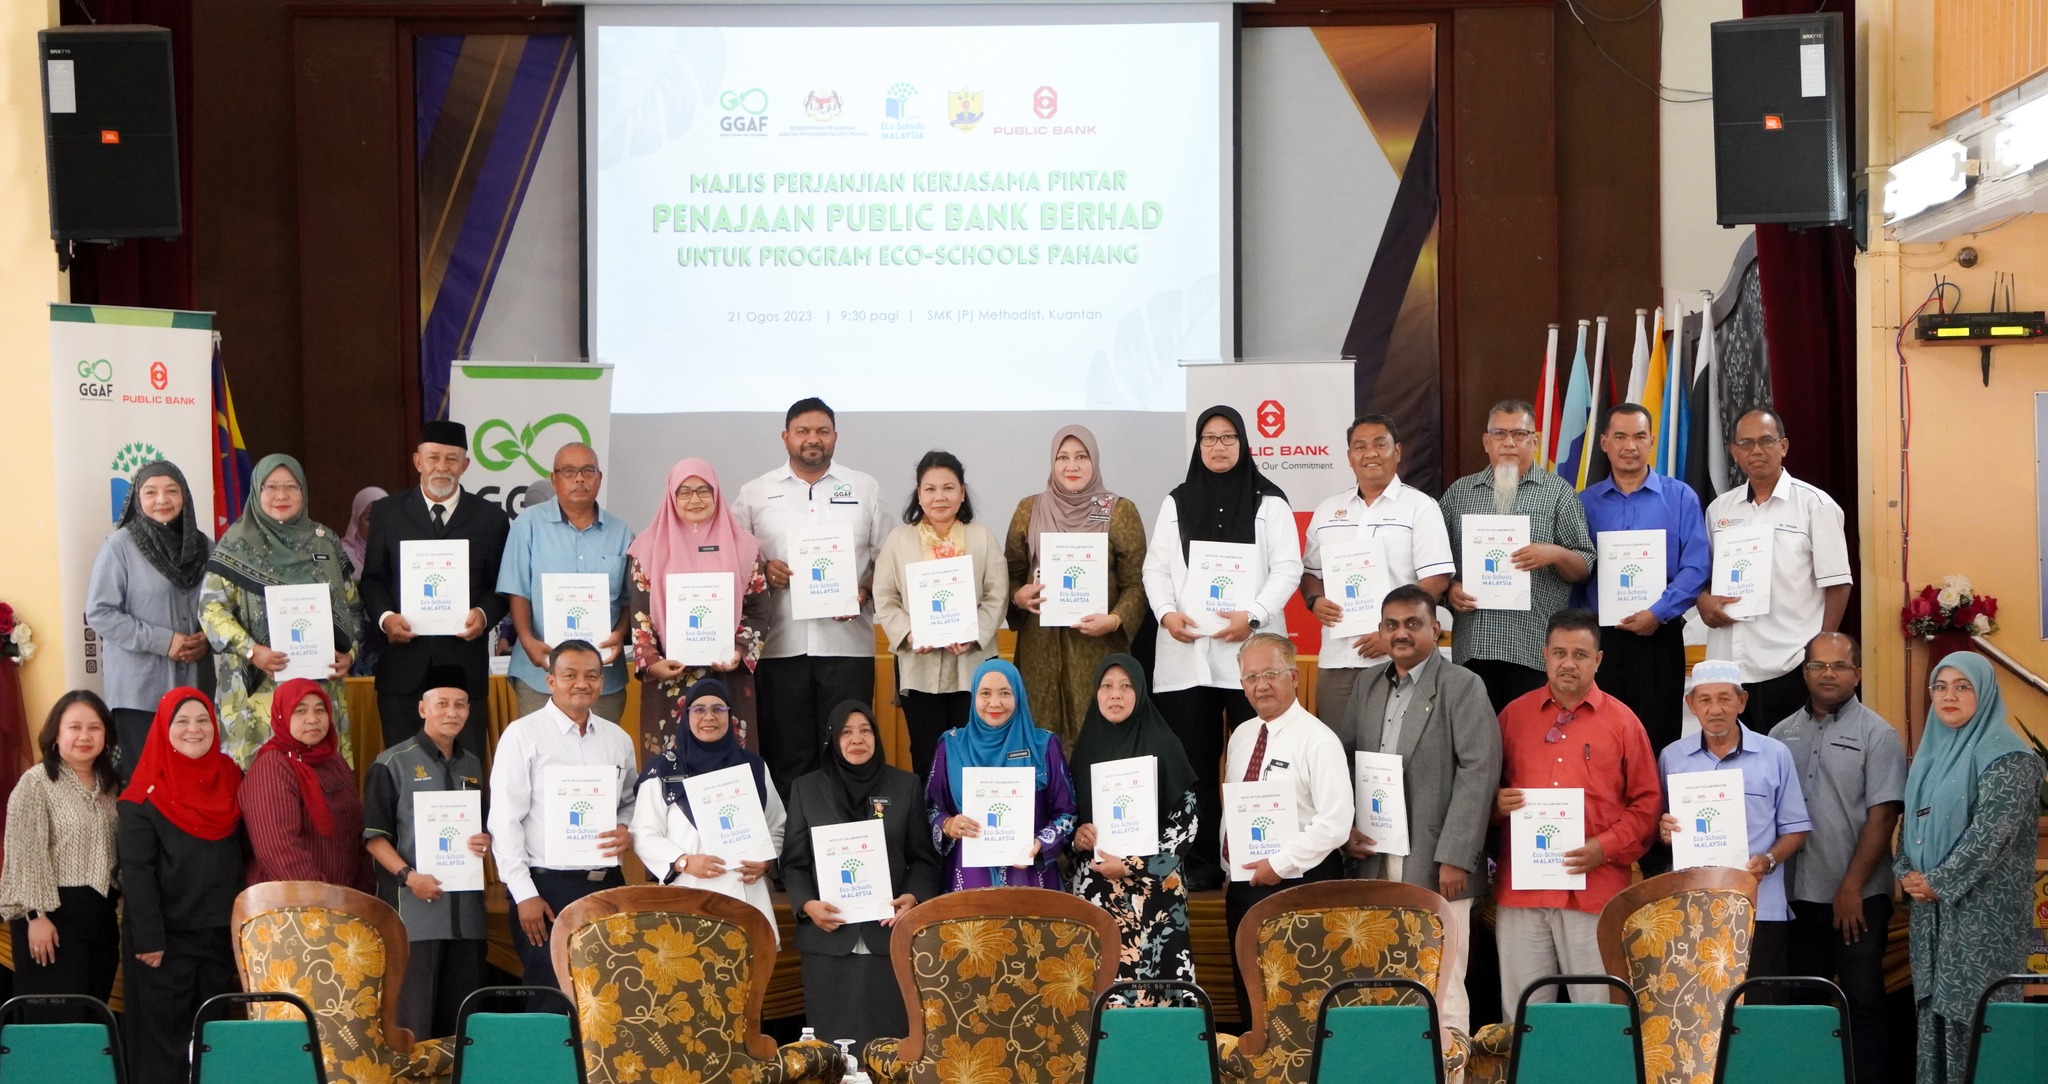 GGAF dan Public Bank Berhad Bekerjasama Membangunkan Pendidikan Pembangunan Lestari Melalui Program Eco-Schools Malaysia